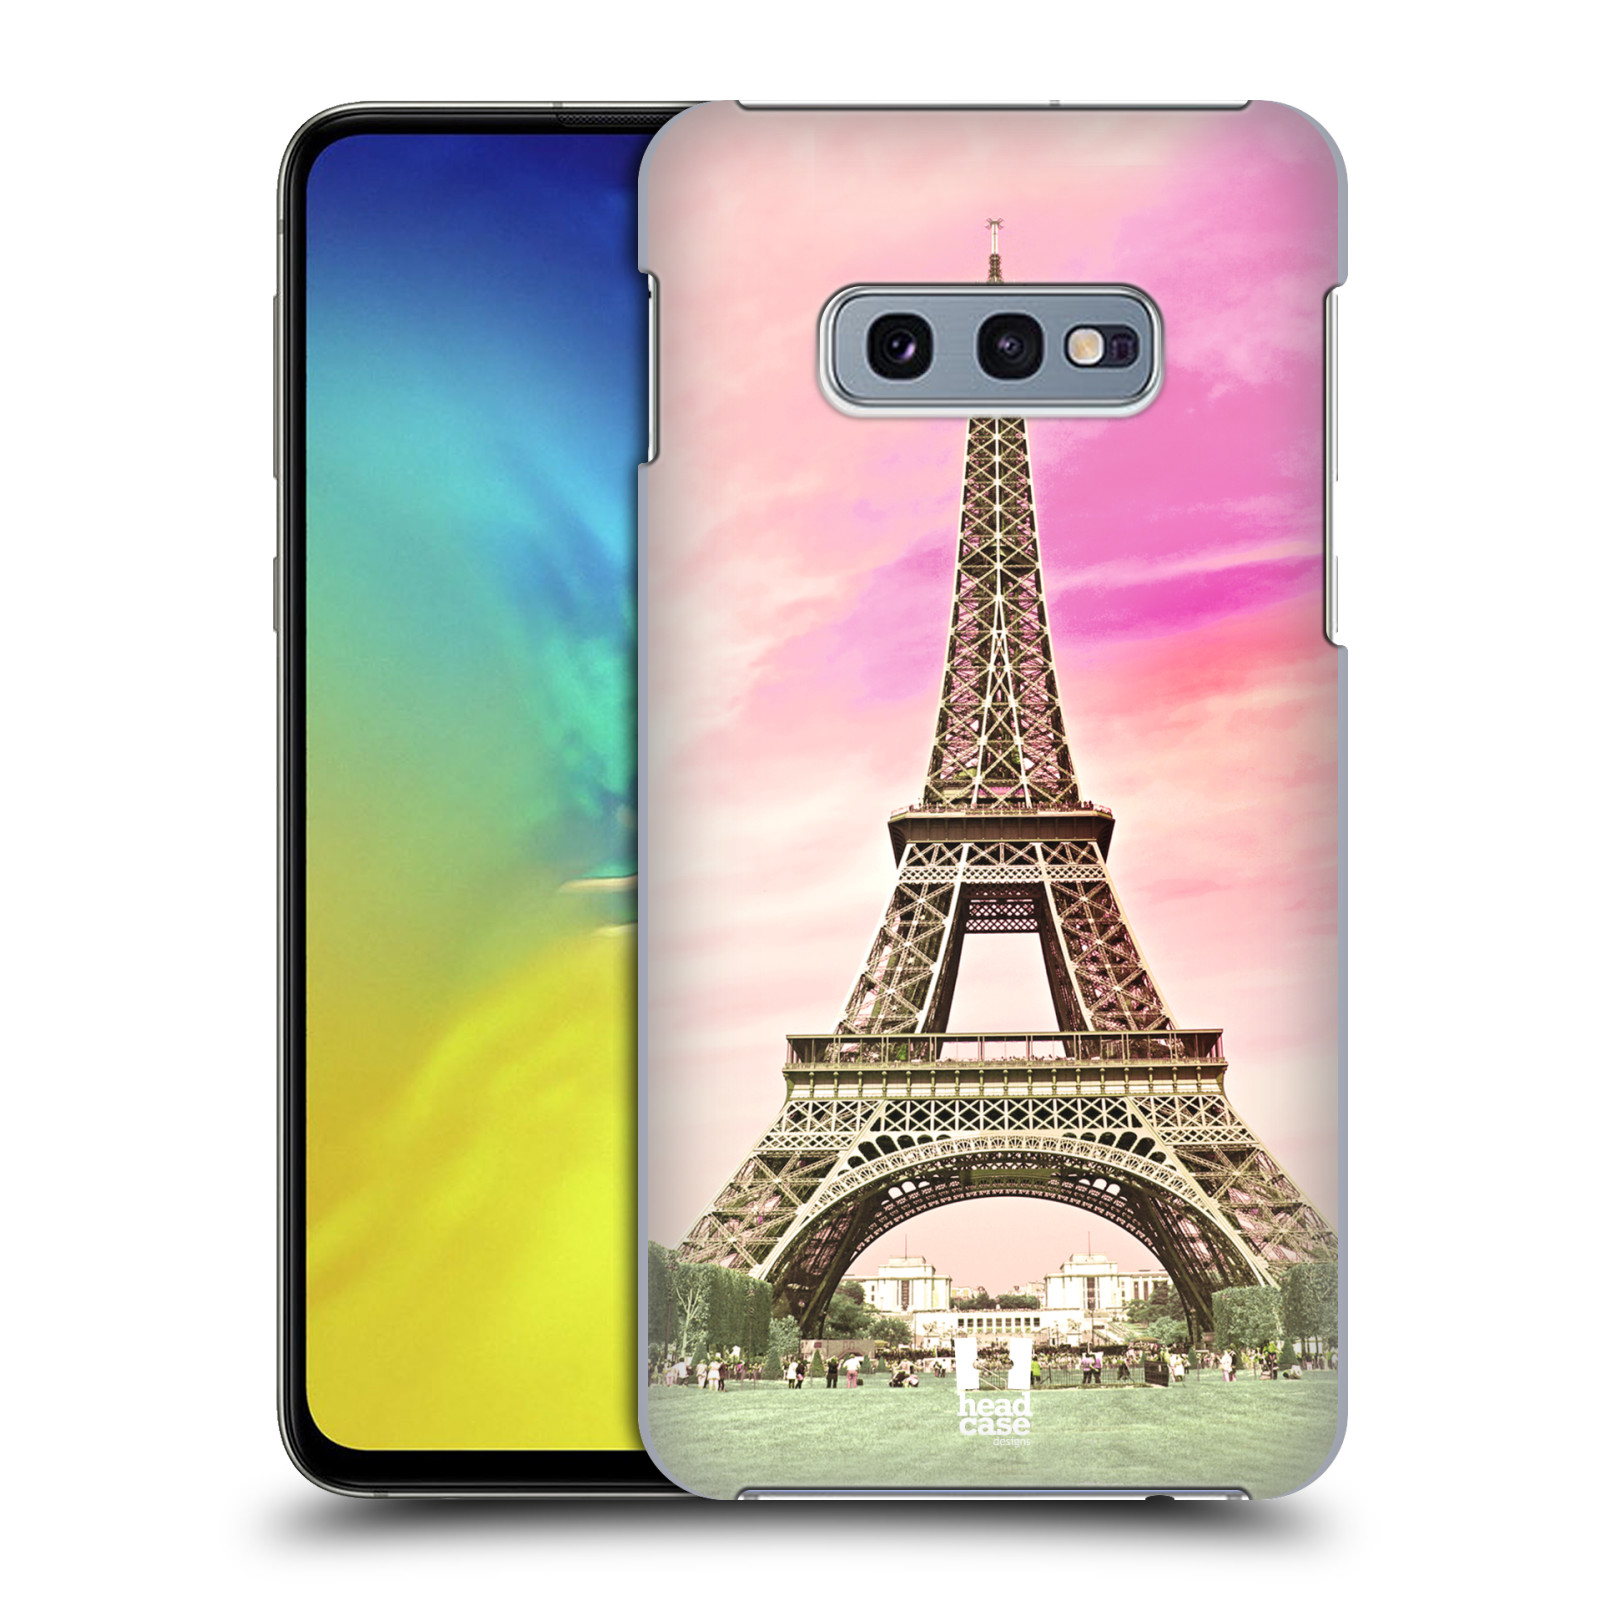 Pouzdro na mobil Samsung Galaxy S10e - HEAD CASE - historická místa Eiffelova věž Paříž